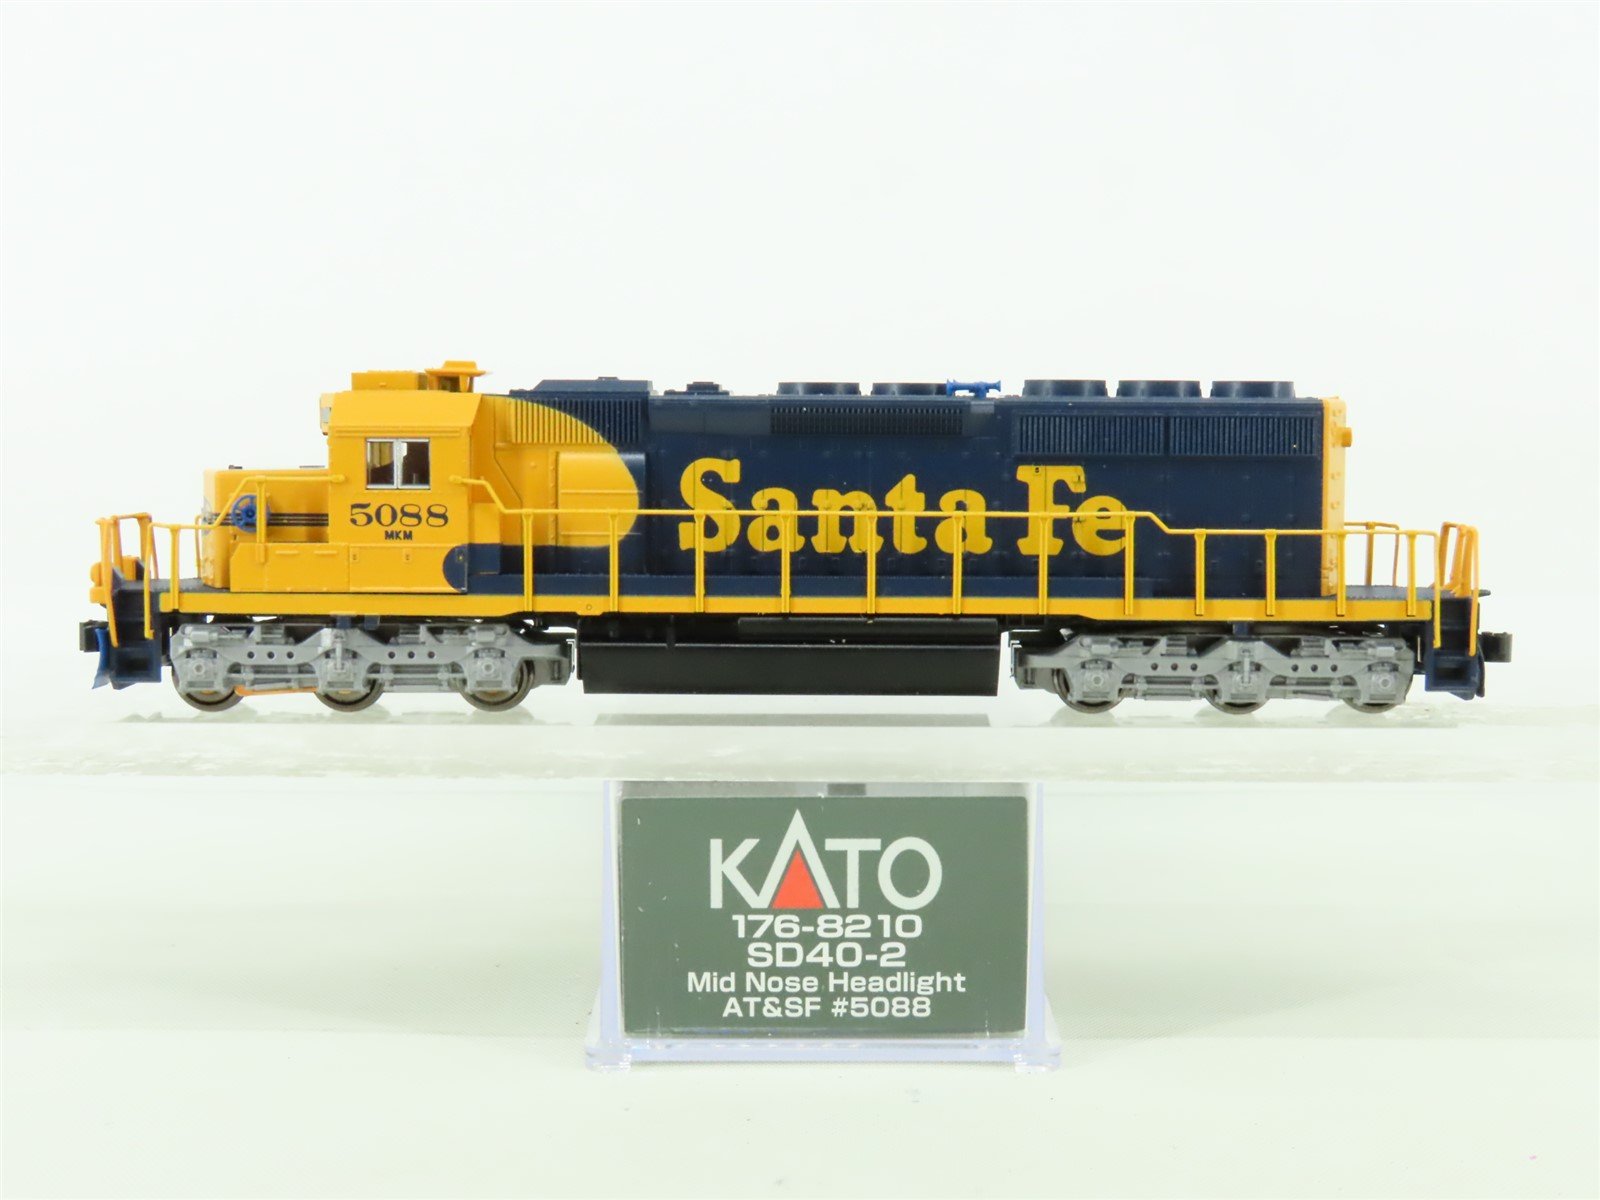 N Scale KATO 176-8210-DCC ATSF Santa Fe EMD SD40-2 Mid Diesel #5088 w/DCC